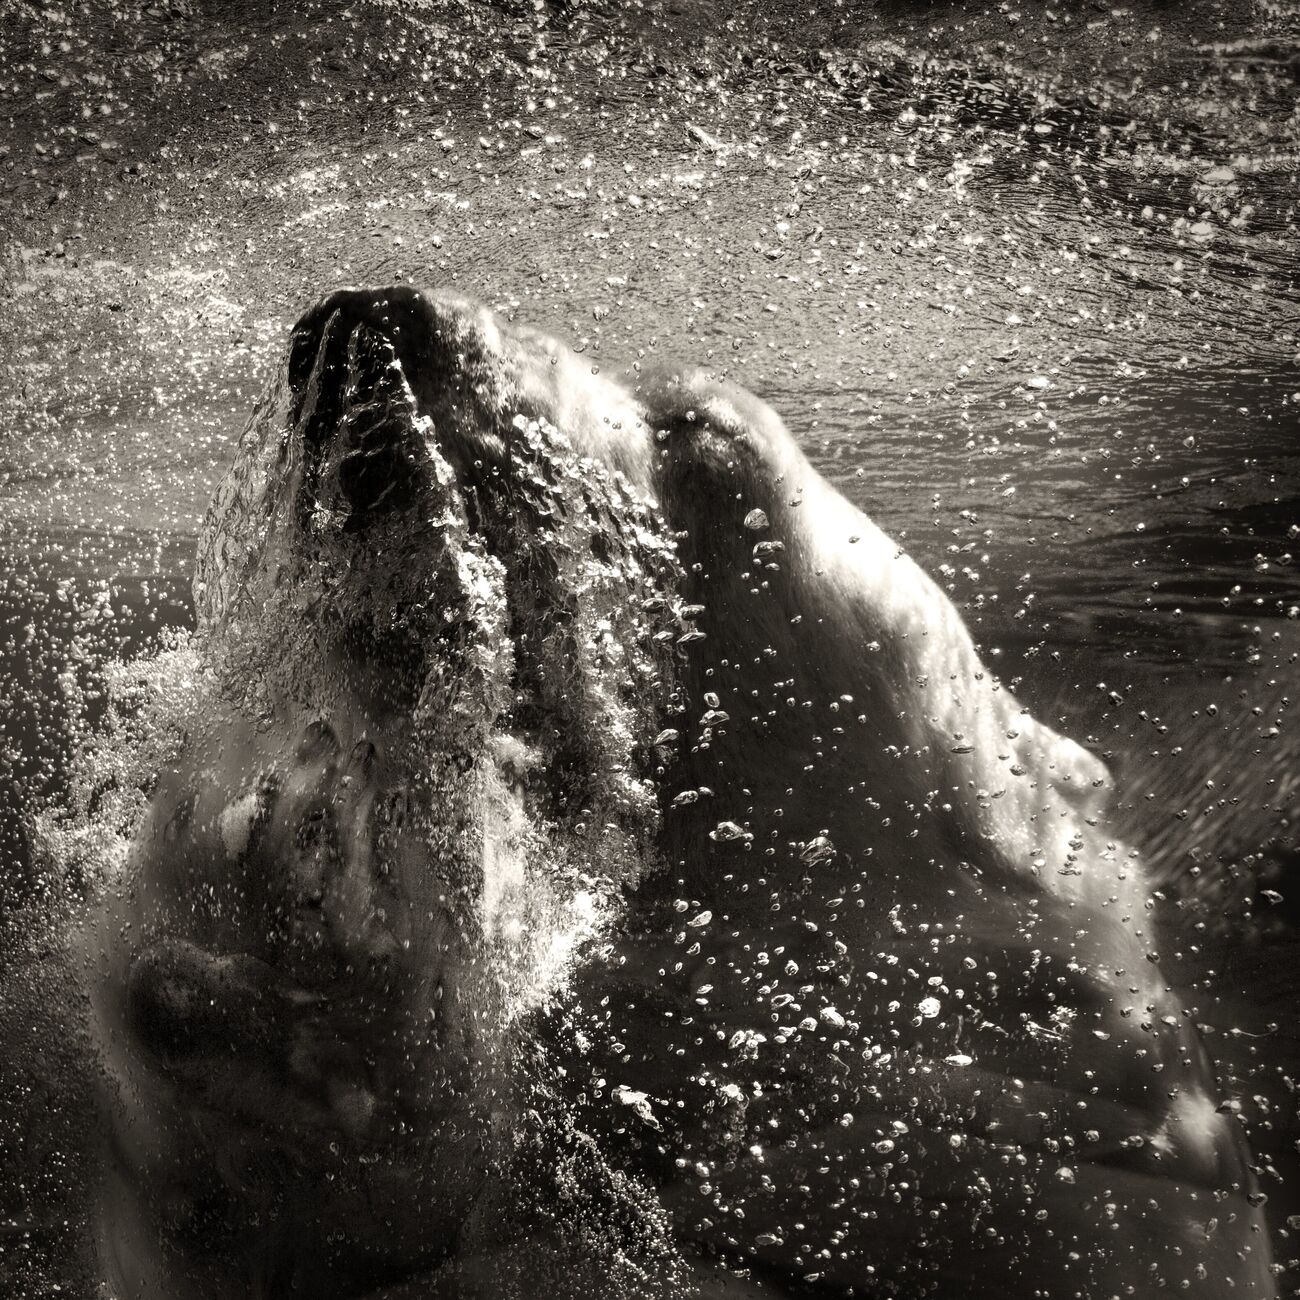 Underwater Polar Bear. September 2009. Ref-1226 - Denis Olivier Photography